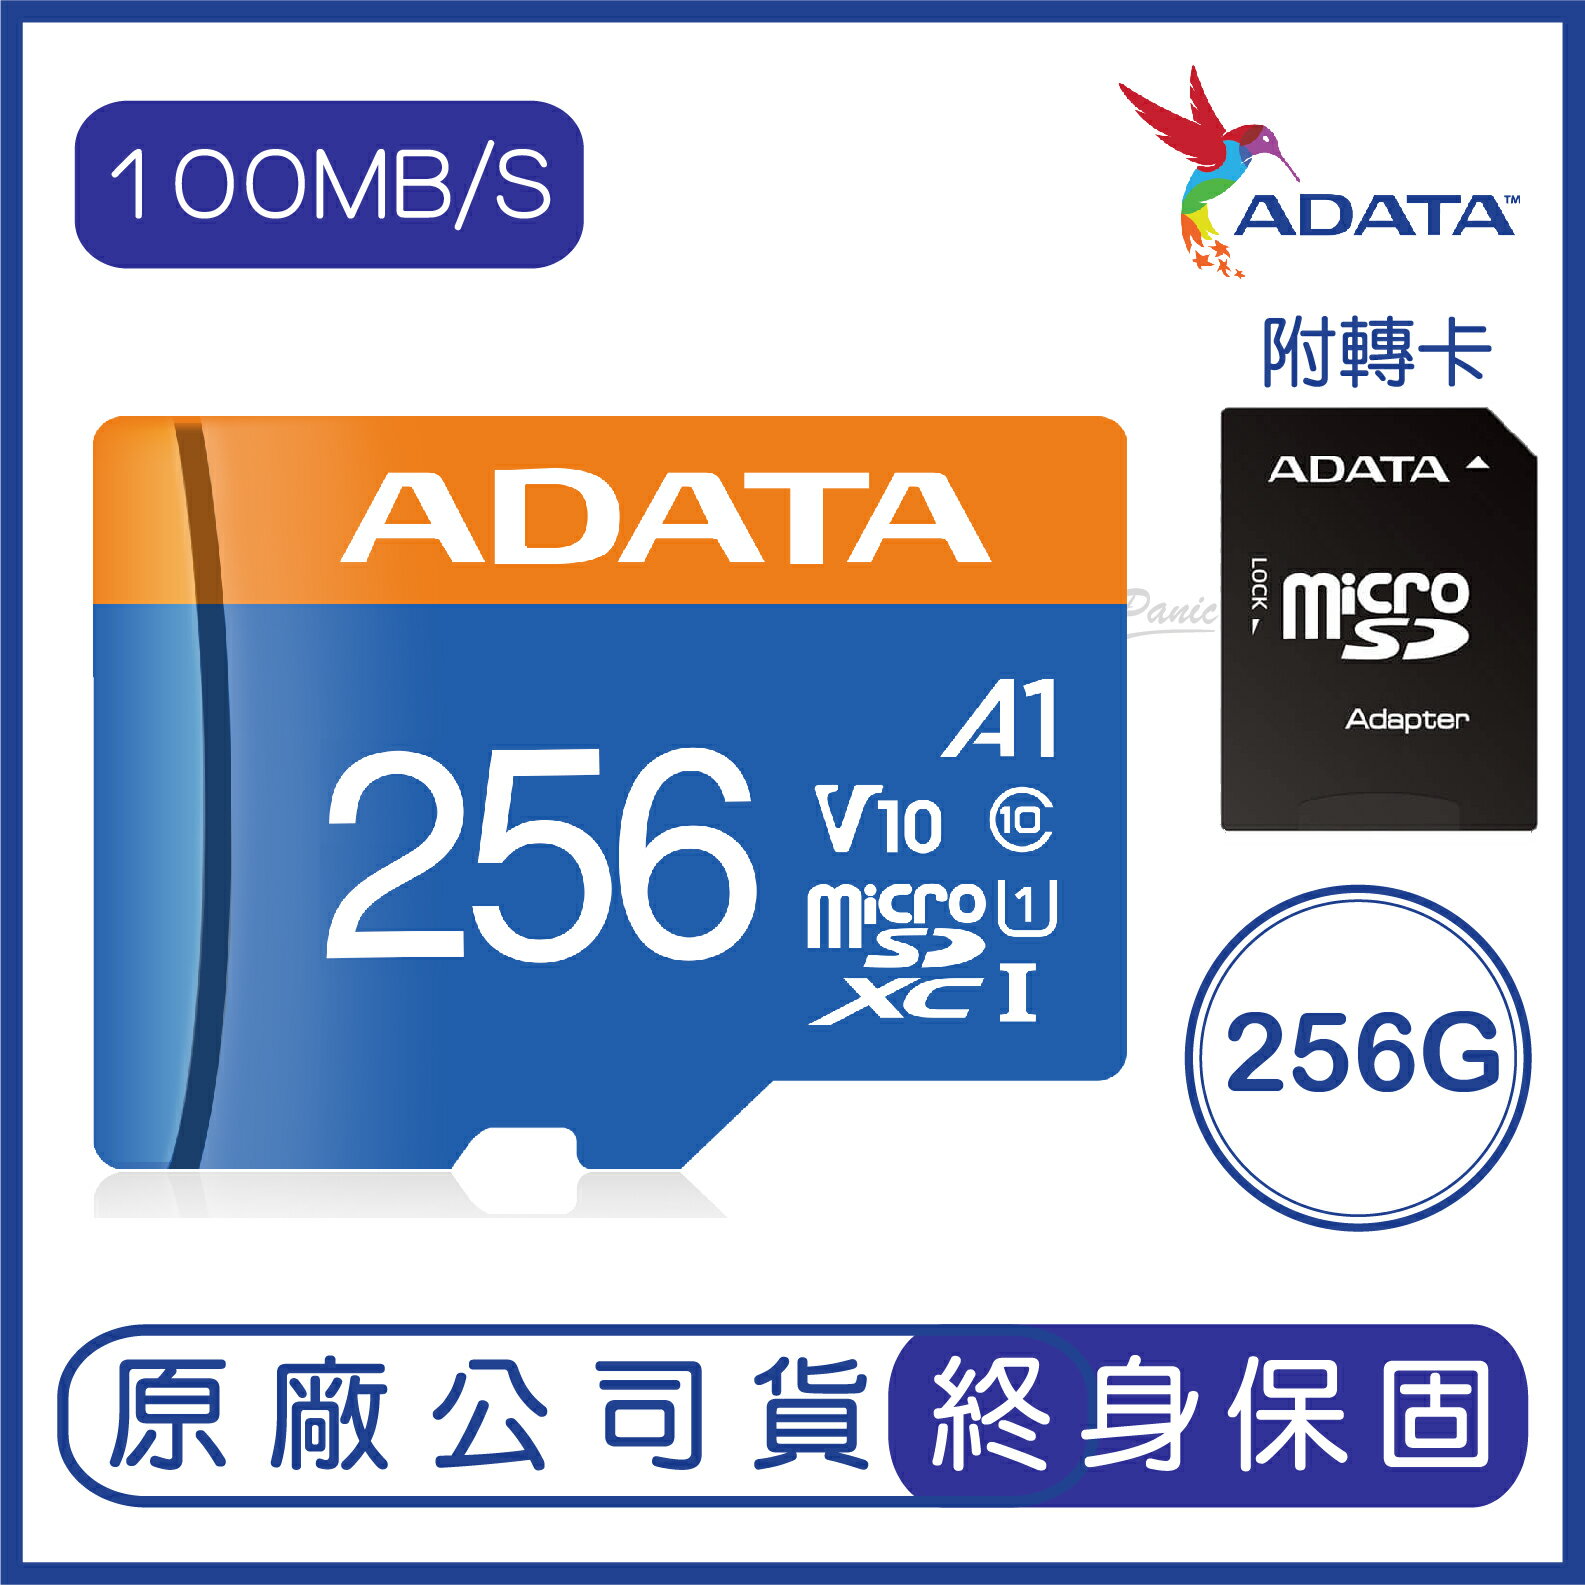 【9%點數】威剛 ADATA 256G Premier microSD UHS-I U1 記憶卡 R100M W25M 256GB【APP下單9%點數回饋】【限定樂天APP下單】